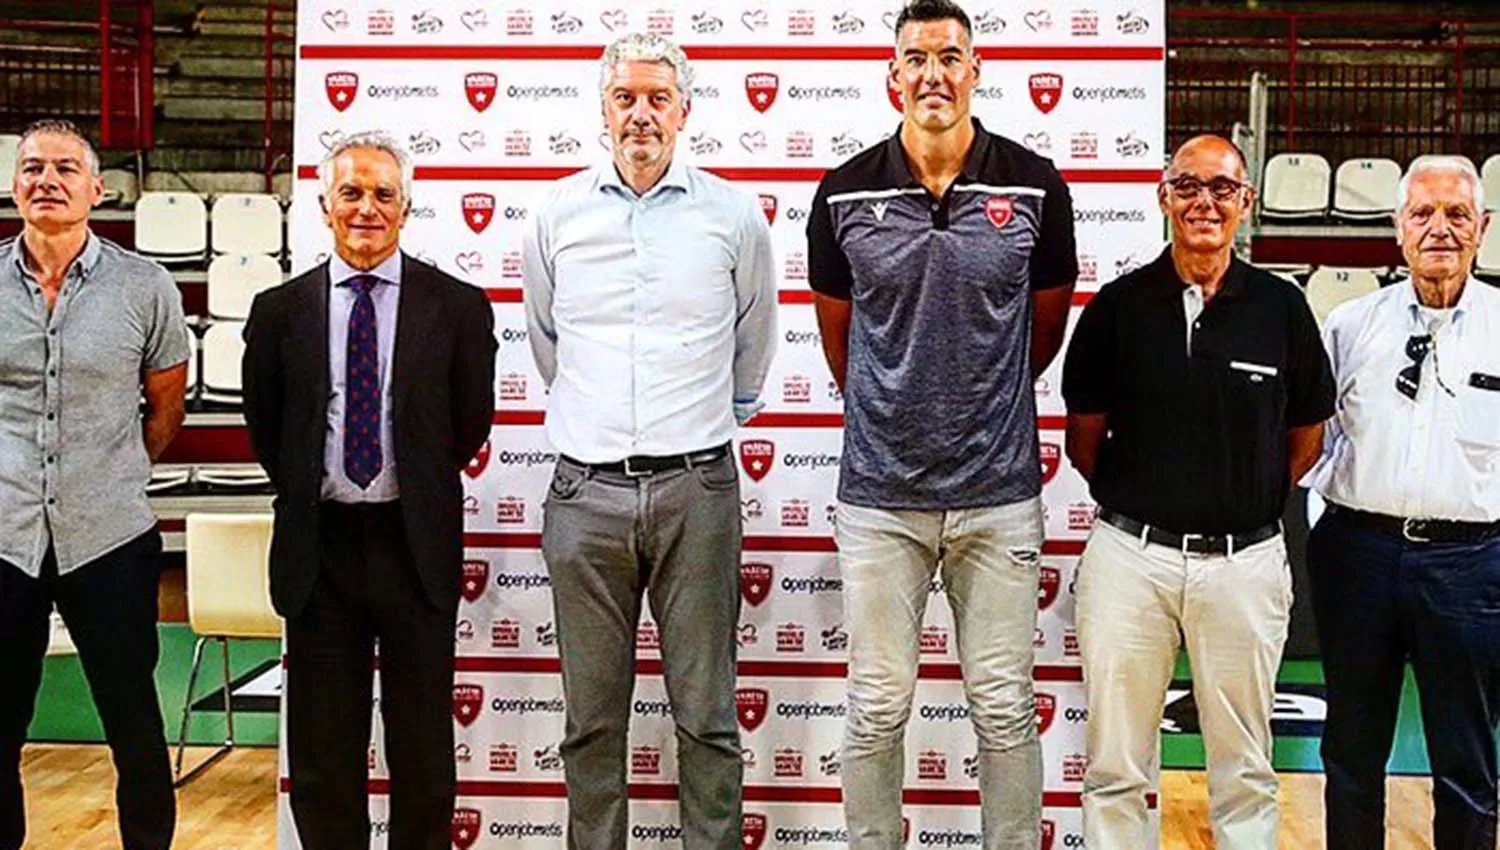 Scola, rodeado por los principales dirigentes del básquet ltaliano. (FOTO TOMADA DE TWITTER @PallVarese)